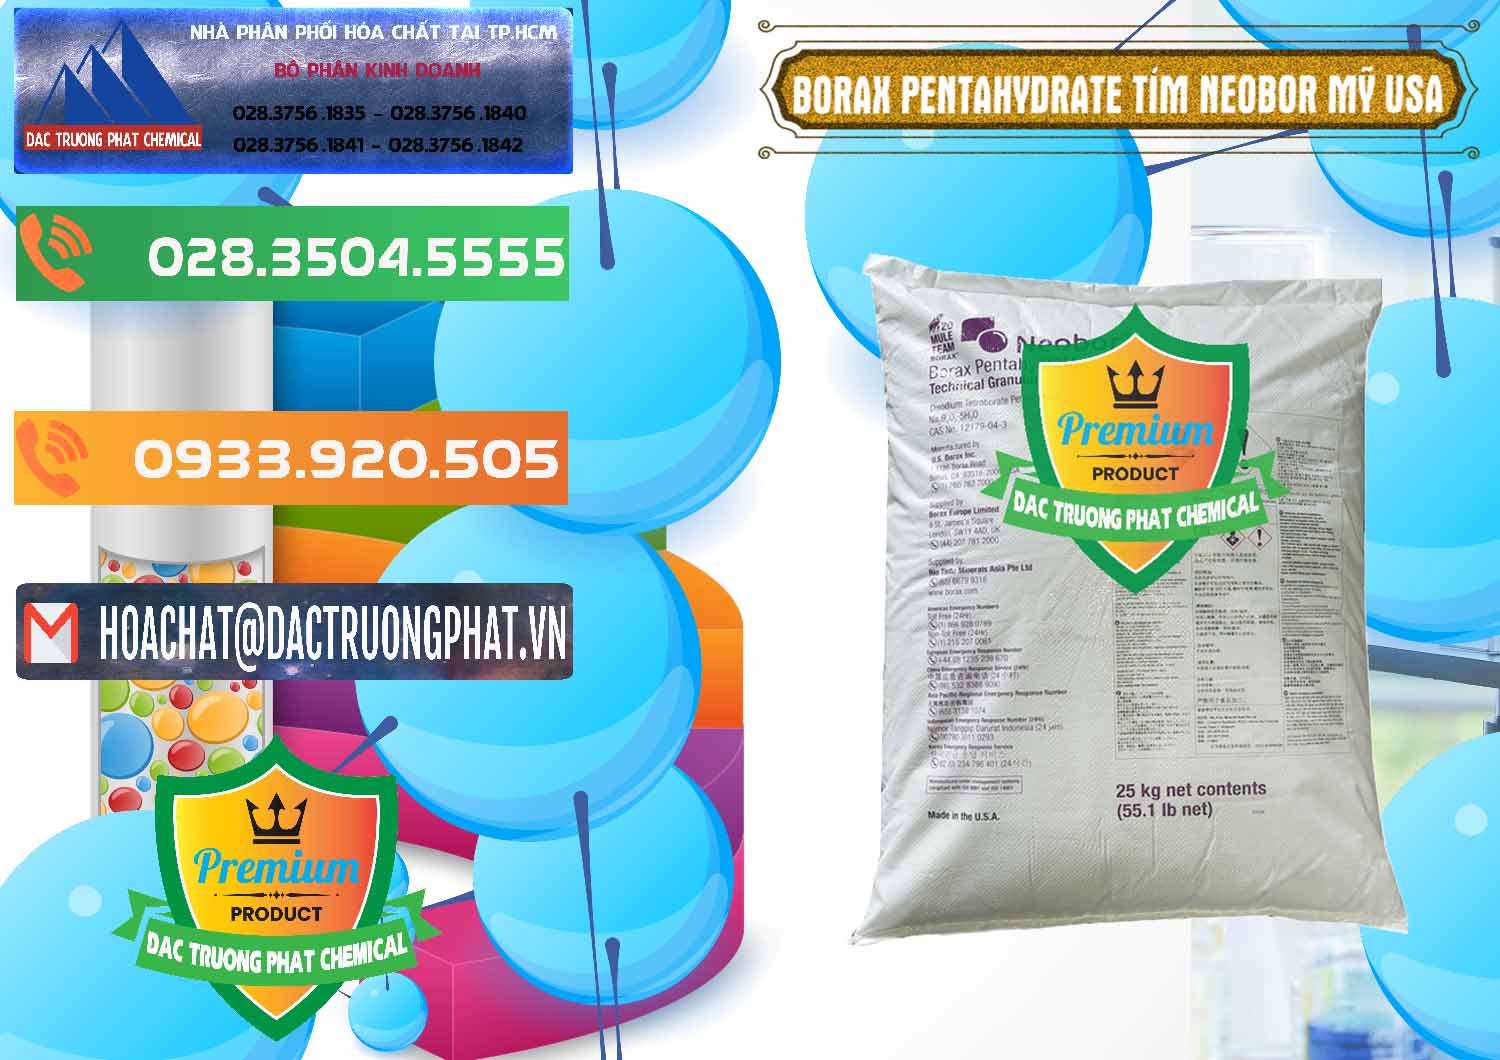 Nhà cung cấp & bán Borax Pentahydrate Bao Tím Neobor TG Mỹ Usa - 0277 - Nơi chuyên bán _ phân phối hóa chất tại TP.HCM - hoachatxulynuoc.com.vn